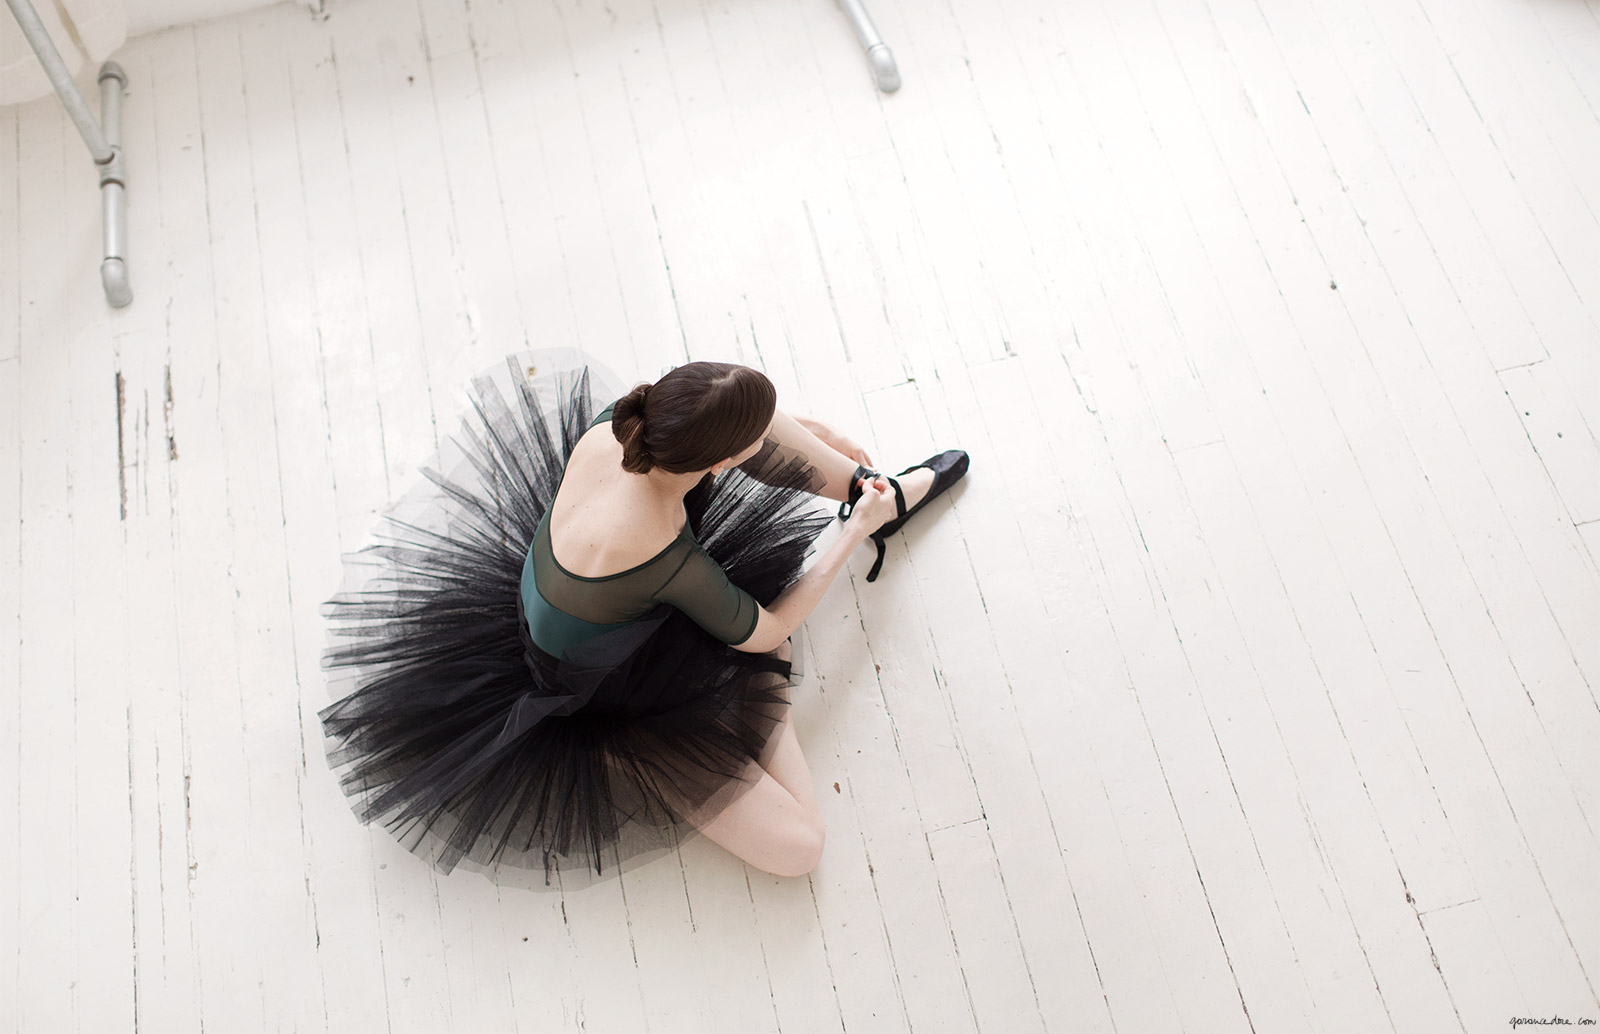 mary helen bowers ballet beautiful no filter instagram garance dore photos